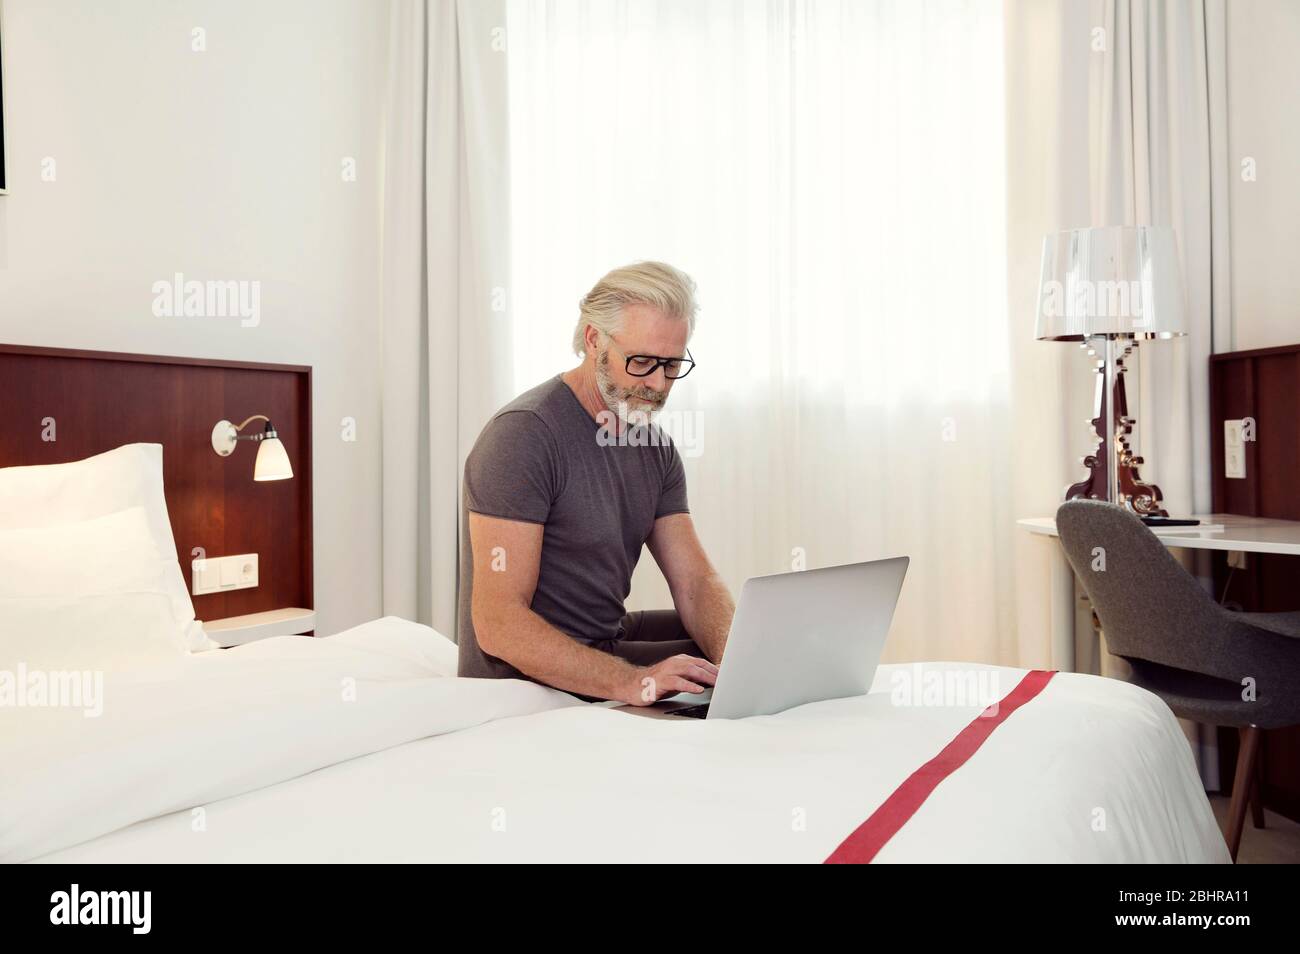 Un uomo seduto su un letto che lavora su un computer portatile. Foto Stock